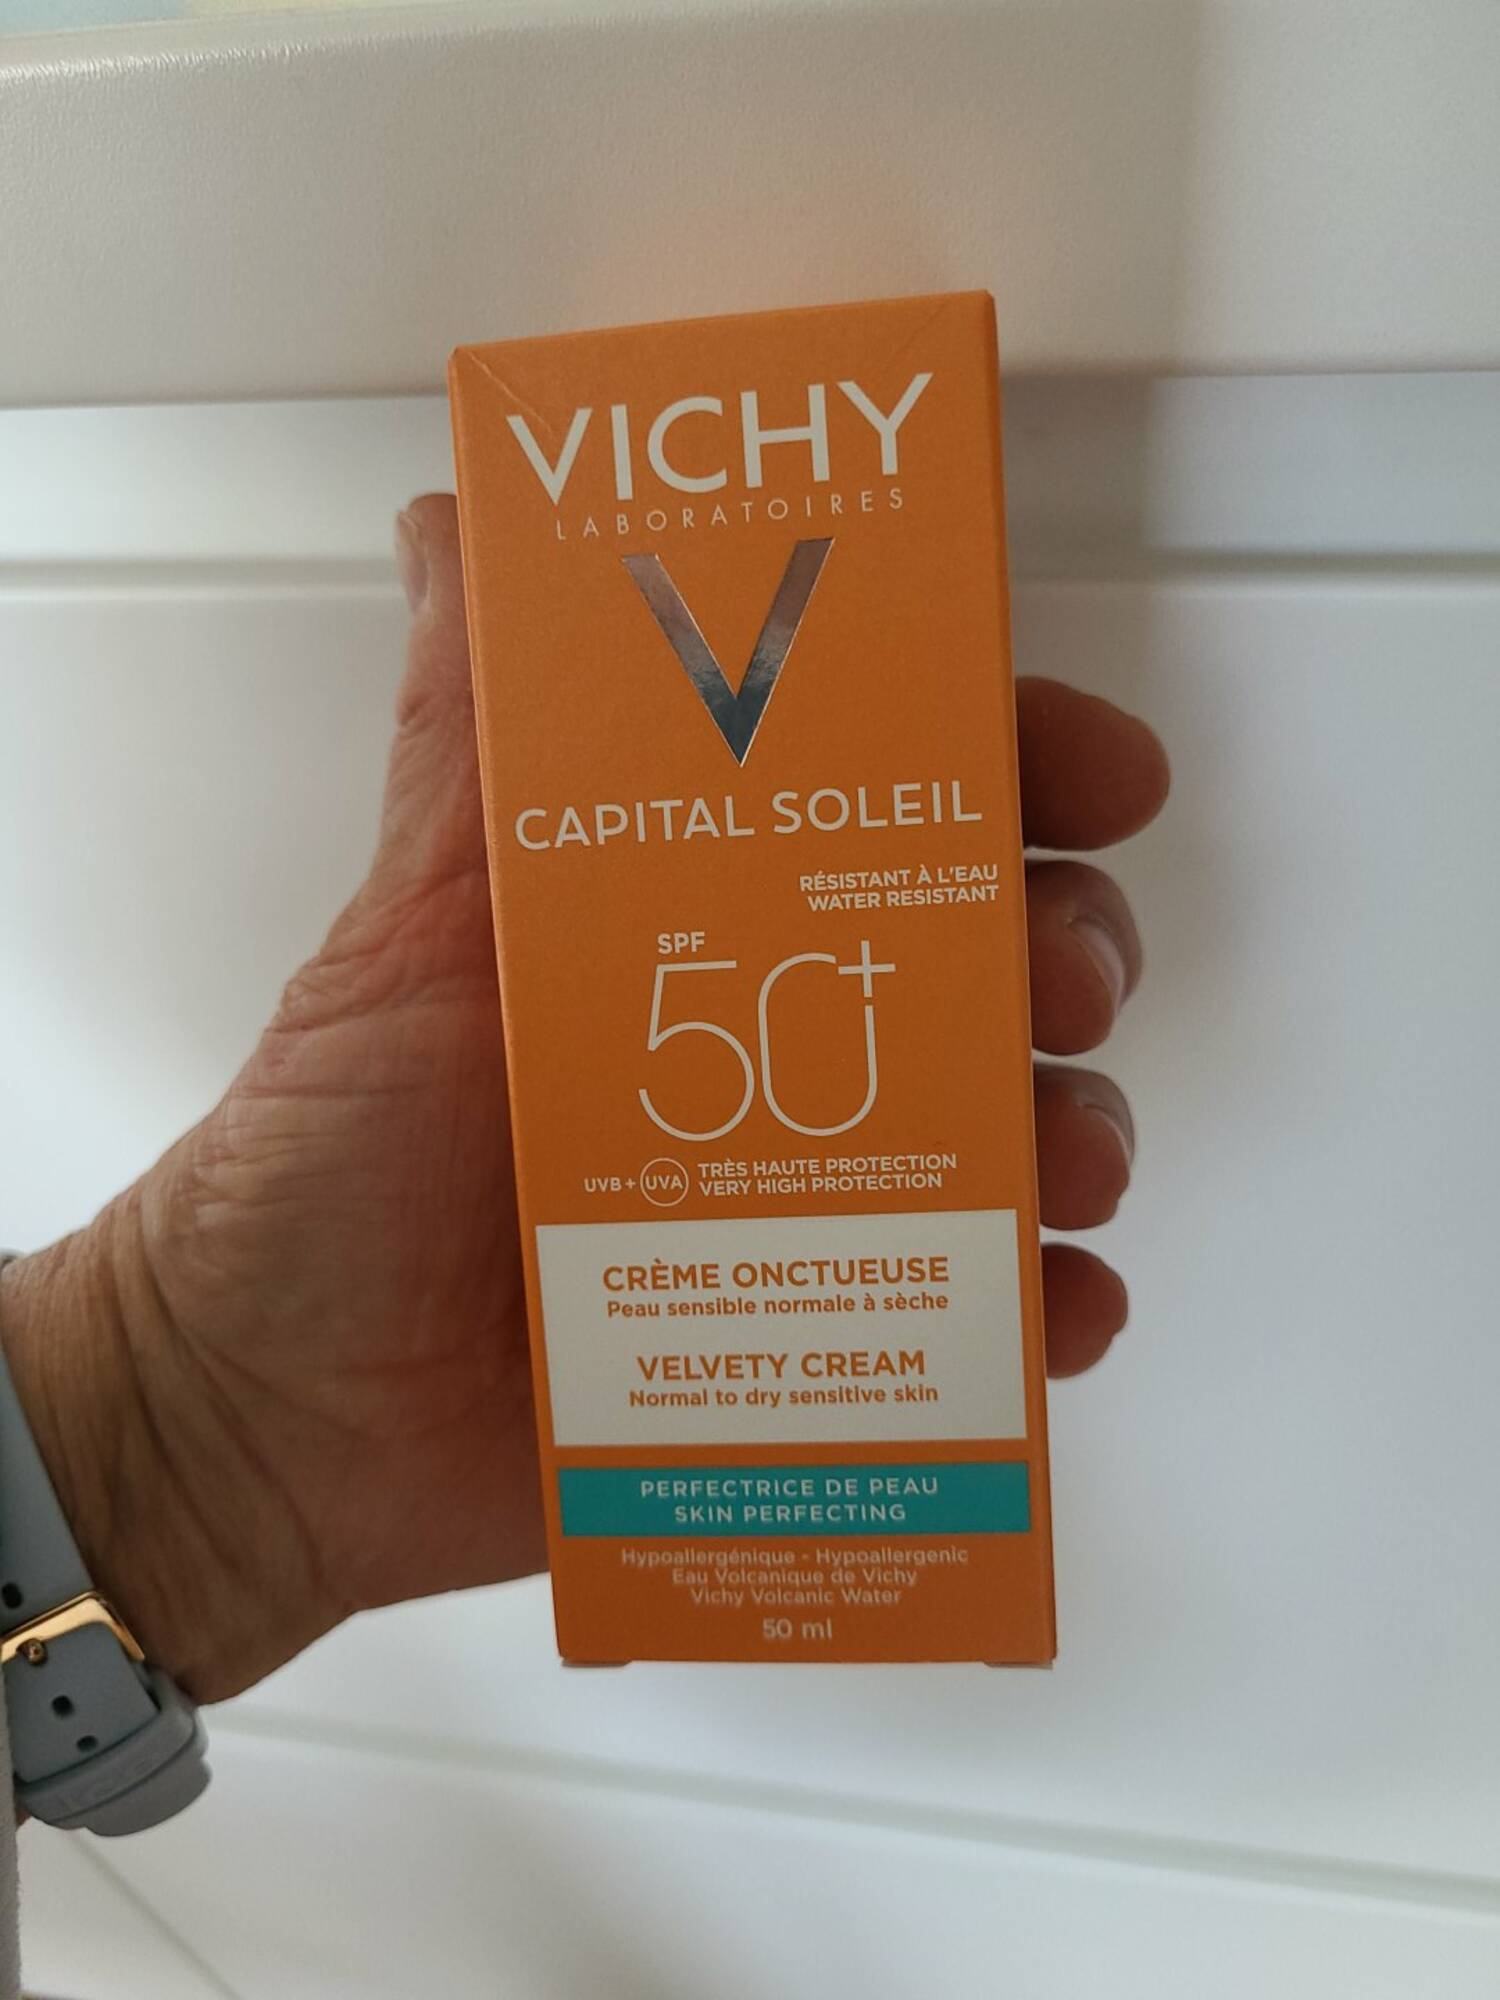 Capital Soleil - Crème onctueuse perfectrice de peau SPF 50+